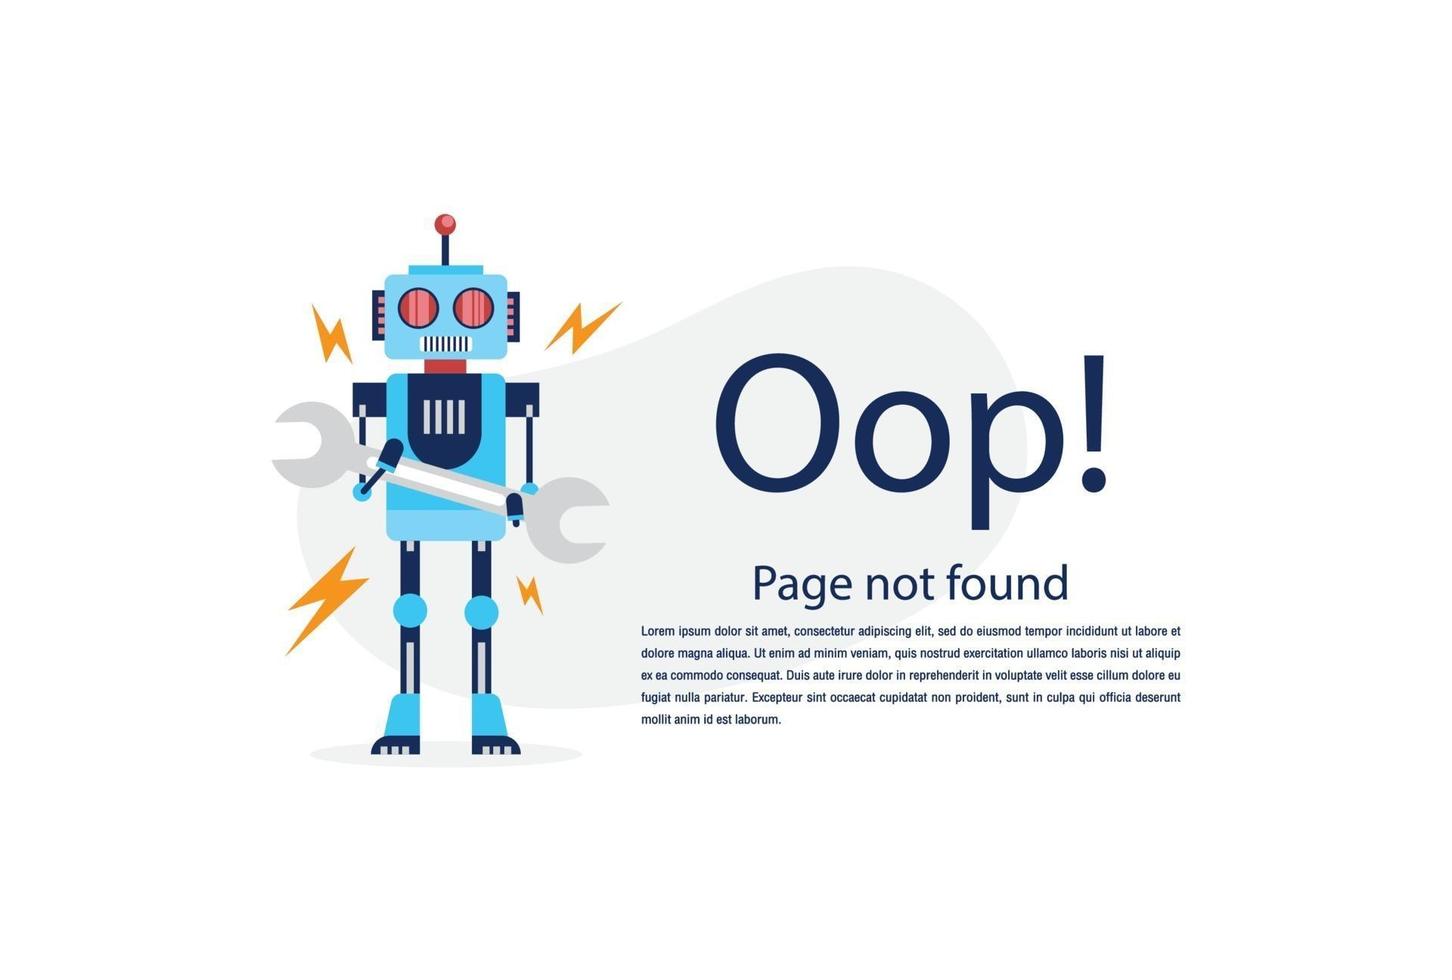 Internet-Netzwerkwarnung 404-Fehlerseite oder Datei für Webseite nicht gefunden. vektor